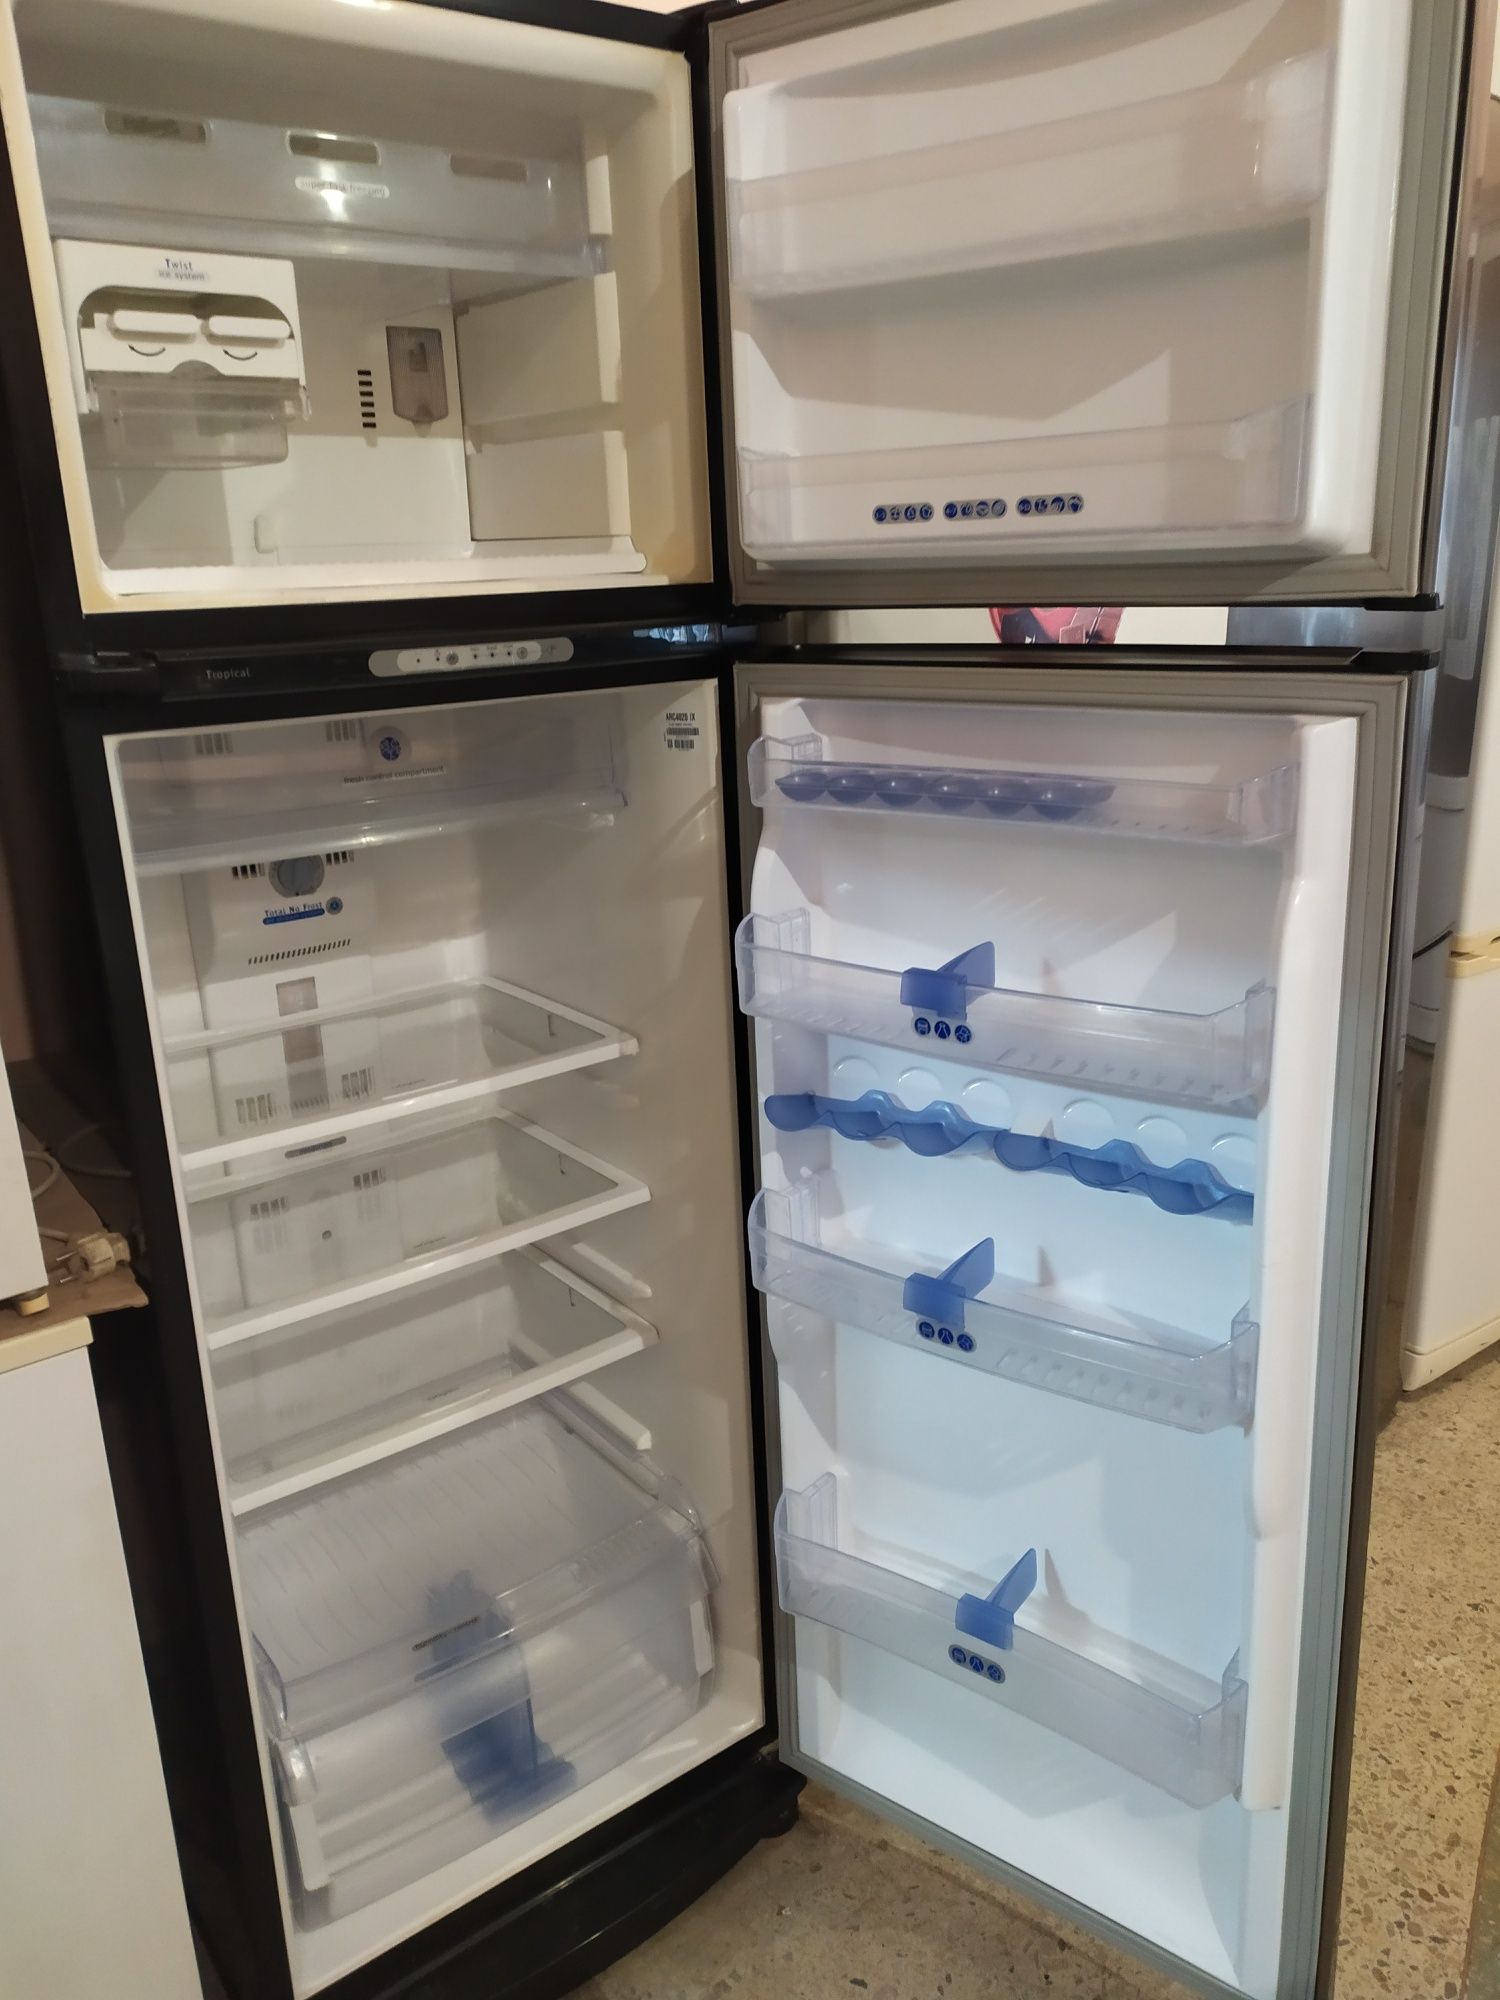 Холодильники после ремонта с гарантией полгода